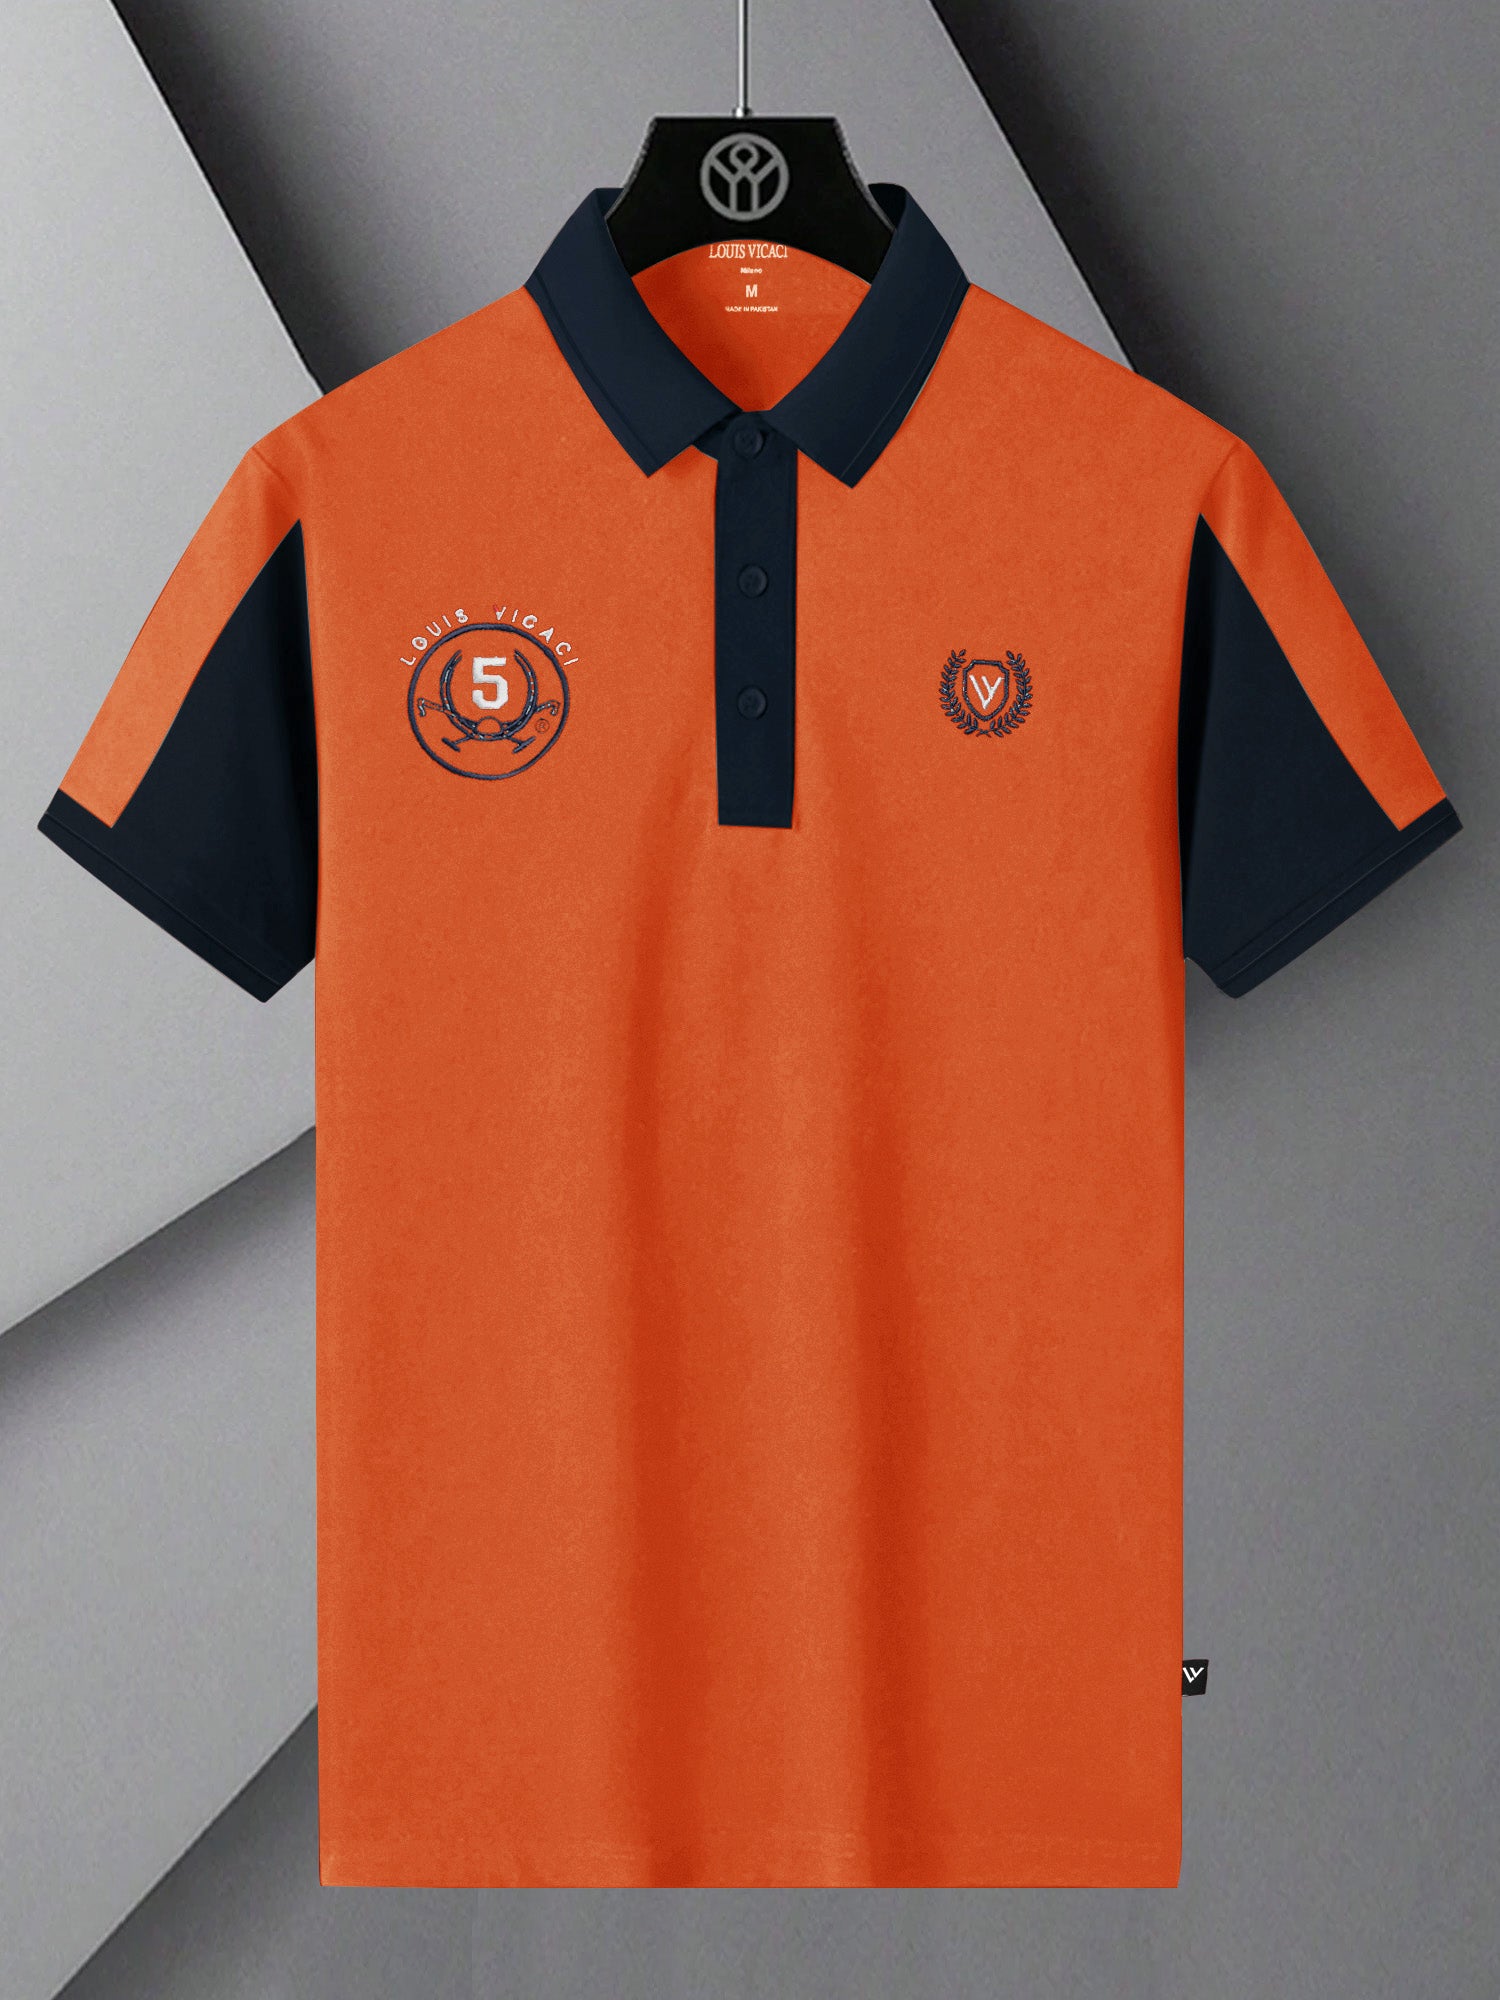 LV Summer Polo Shirt For Men-Orange & Dark Navy-SP1544/RT2365